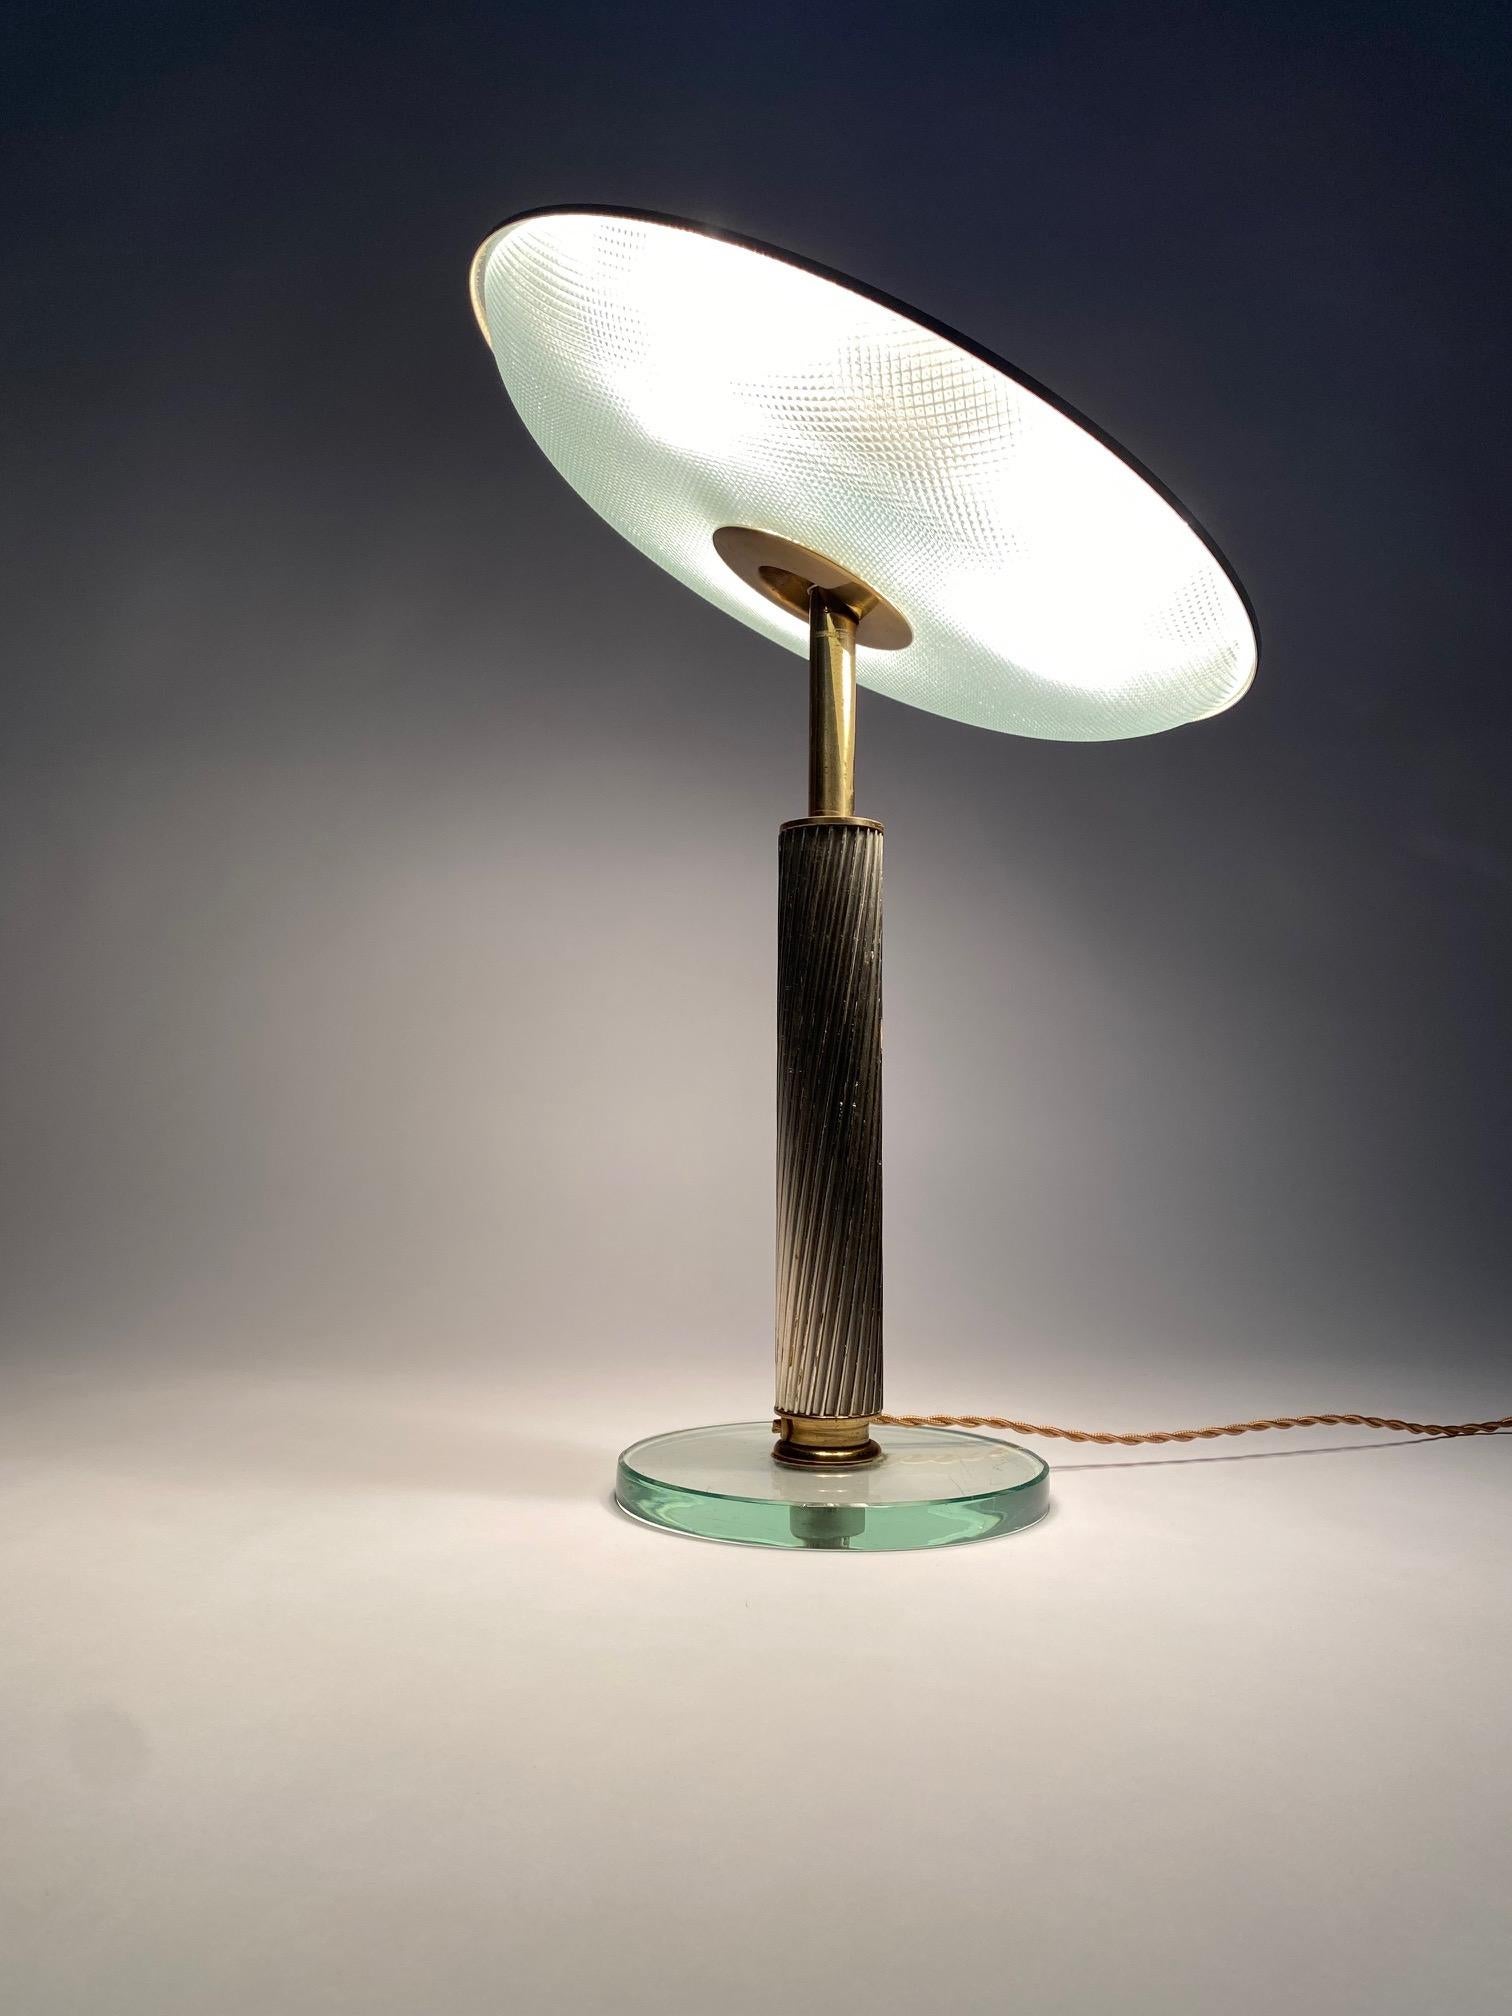 Rare et monumentale lampe de table créée par le célèbre designer Pietro Chiesa pour Fontana Arte, Italie, années 1940.

C'est l'une des lampes les plus emblématiques du design italien des années 1940, élégante et précieuse mais en même temps sobre